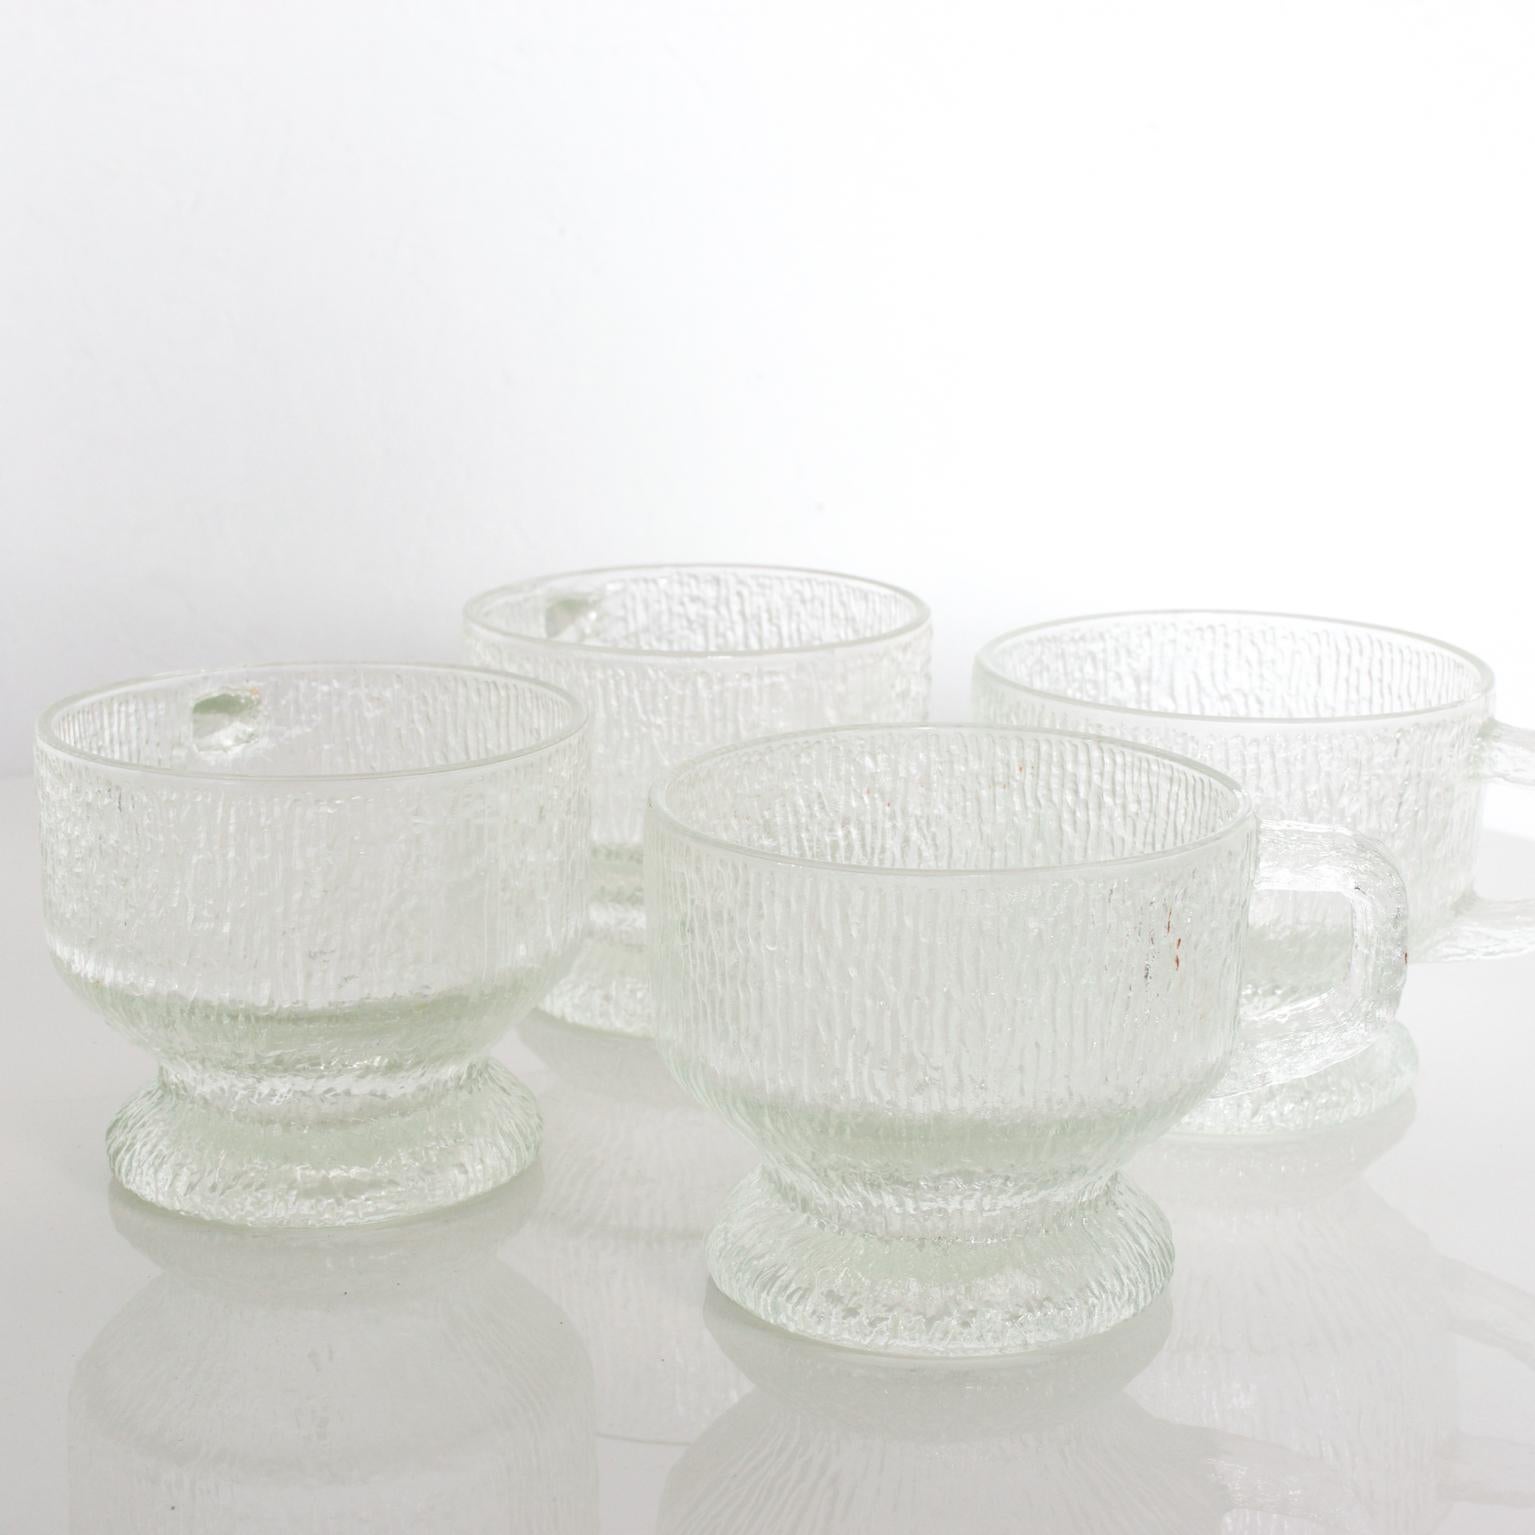 patterned glass mugs